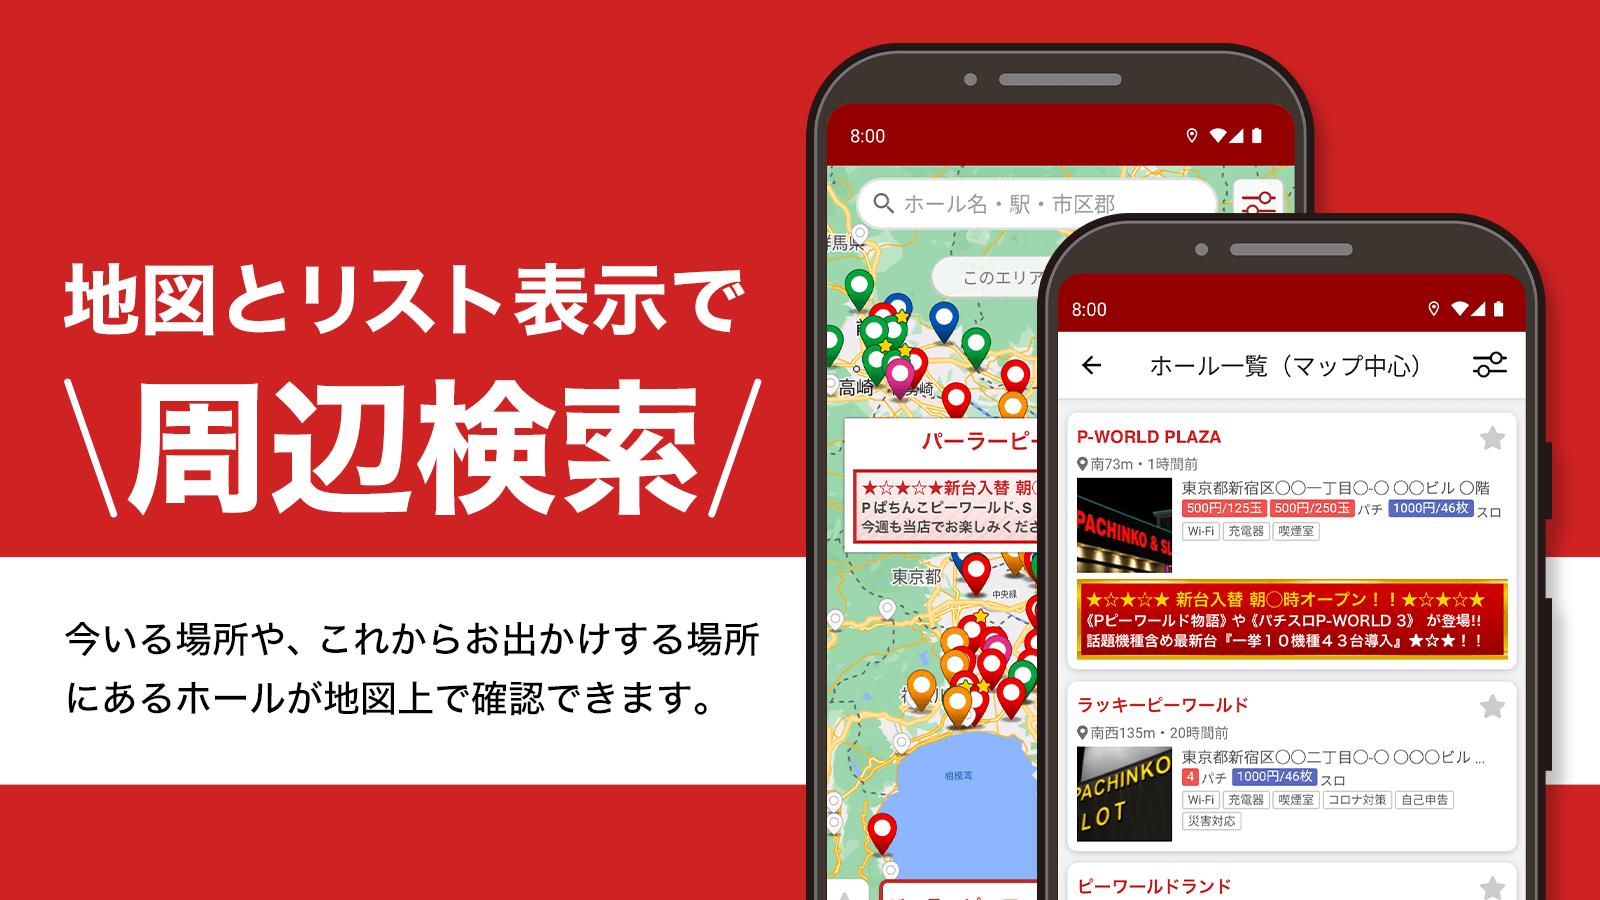 P-WORLD パチンコ店MAP - パチンコ店がみつかる Screenshot 5